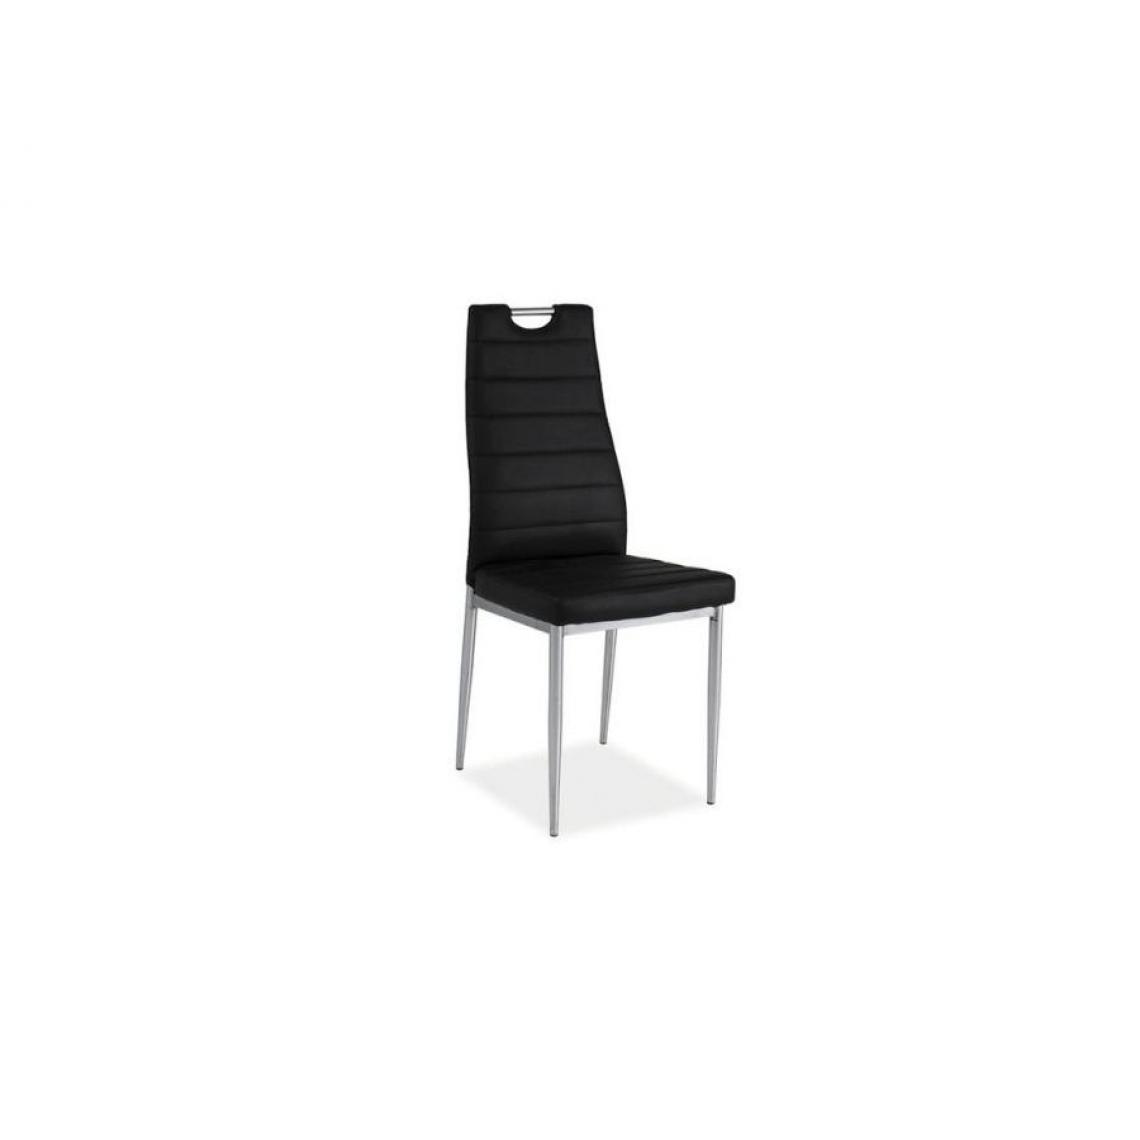 Hucoco - INAYA | Chaise style minimaliste salle à manger/bureau | Dimensions : 96x40x38 cm | Rembourrage en cuir écologique | Dossier profilé - Noir - Chaises